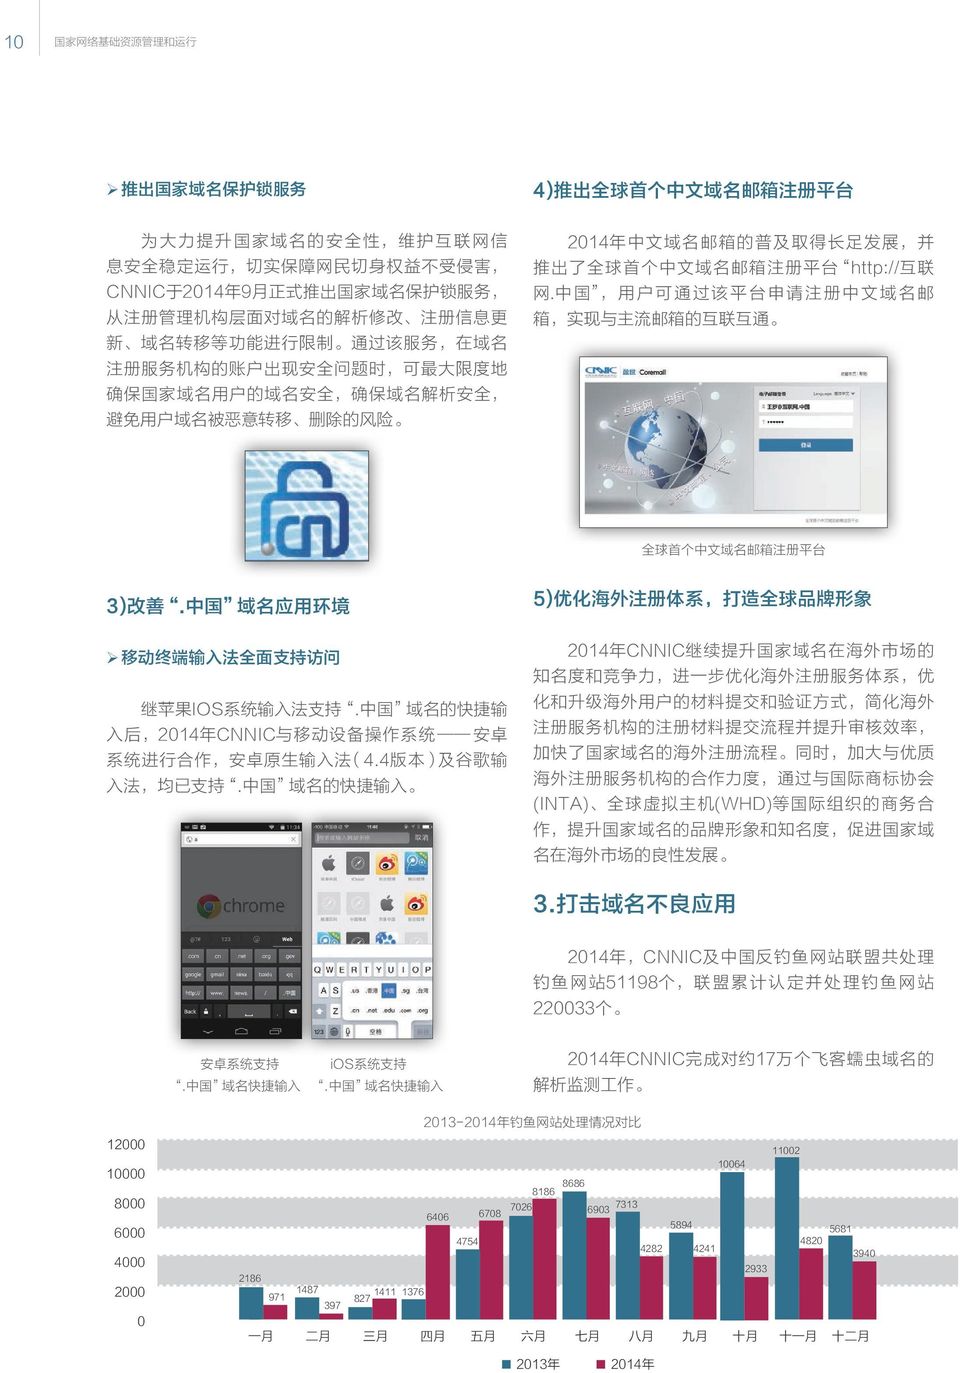 名 被 恶 意 转 移 删 除 的 风 险 2014 年 中 文 域 名 邮 箱 的 普 及 取 得 长 足 发 展, 并 推 出 了 全 球 首 个 中 文 域 名 邮 箱 注 册 平 台 http:// 互 联 网.